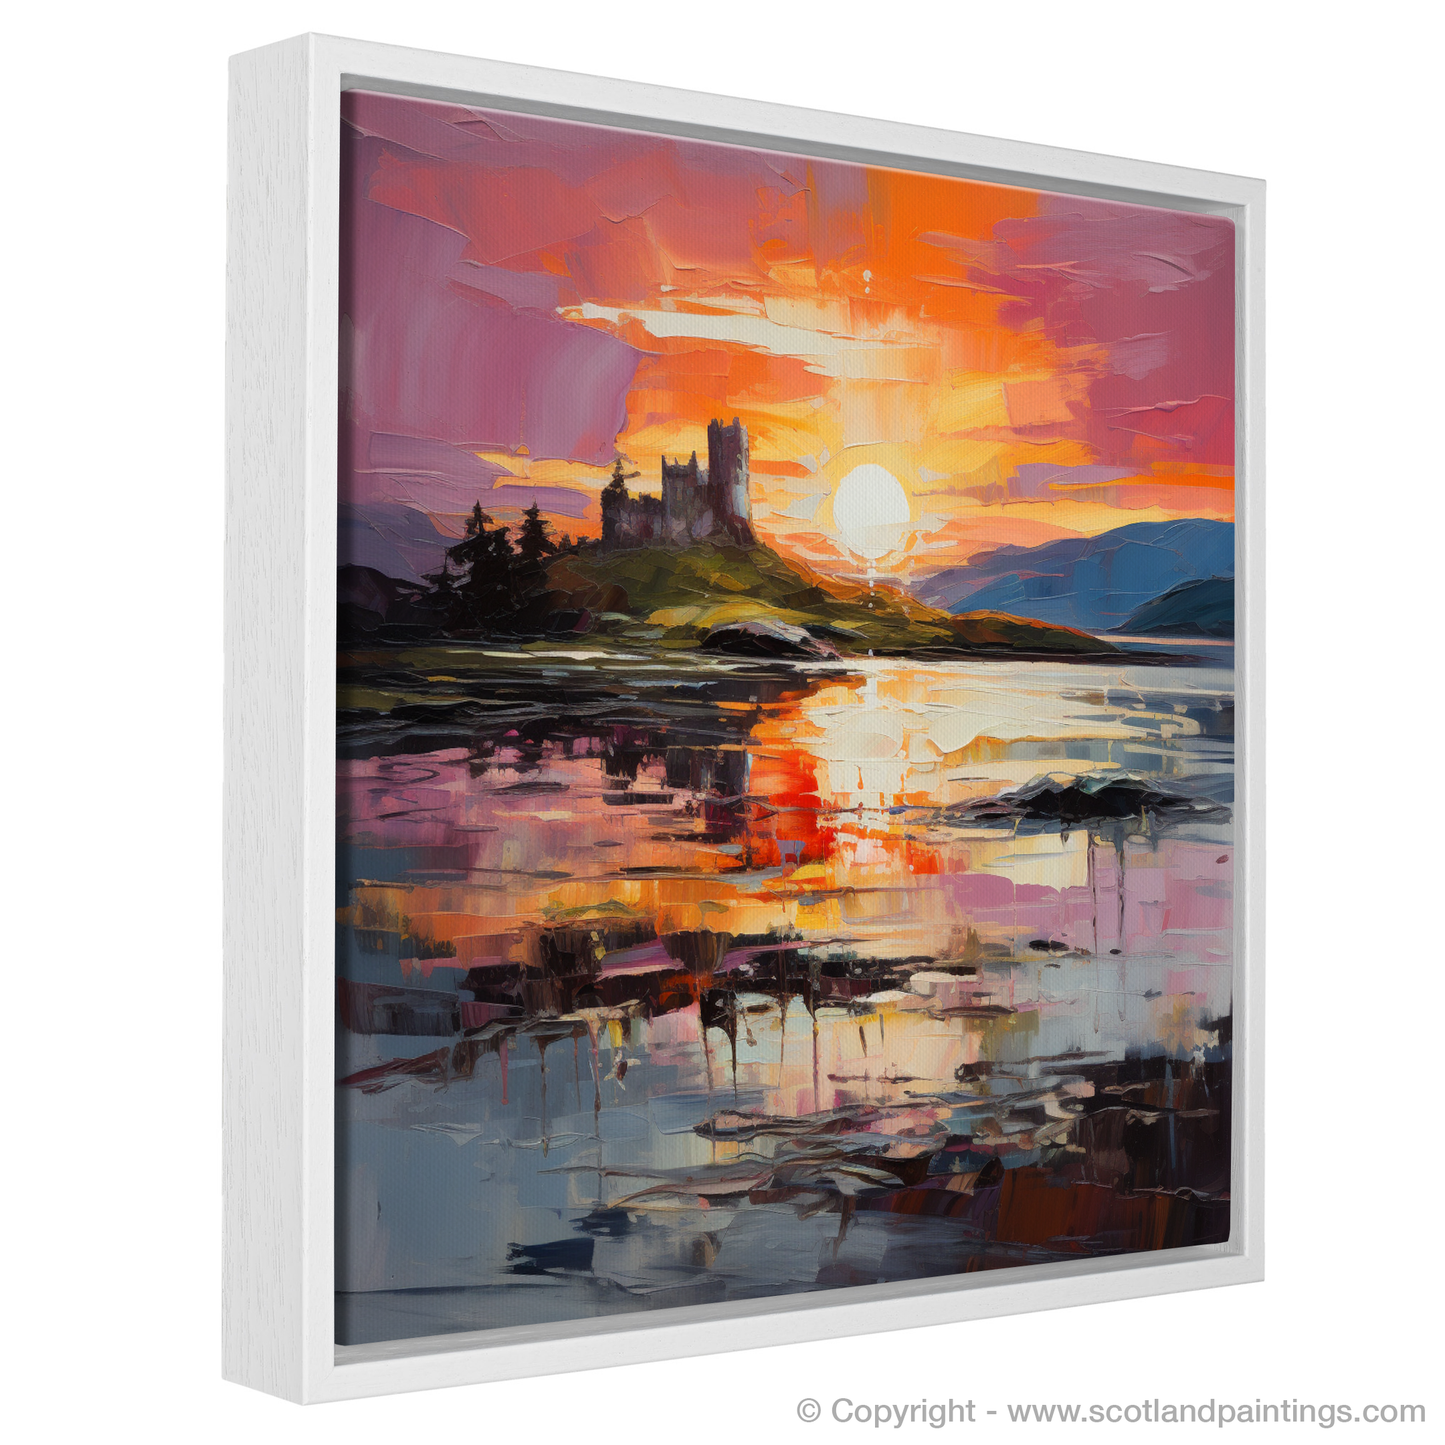 Painting and Art Print of Castle Stalker Bay at sunset entitled "Sunset Blaze over Castle Stalker Bay".